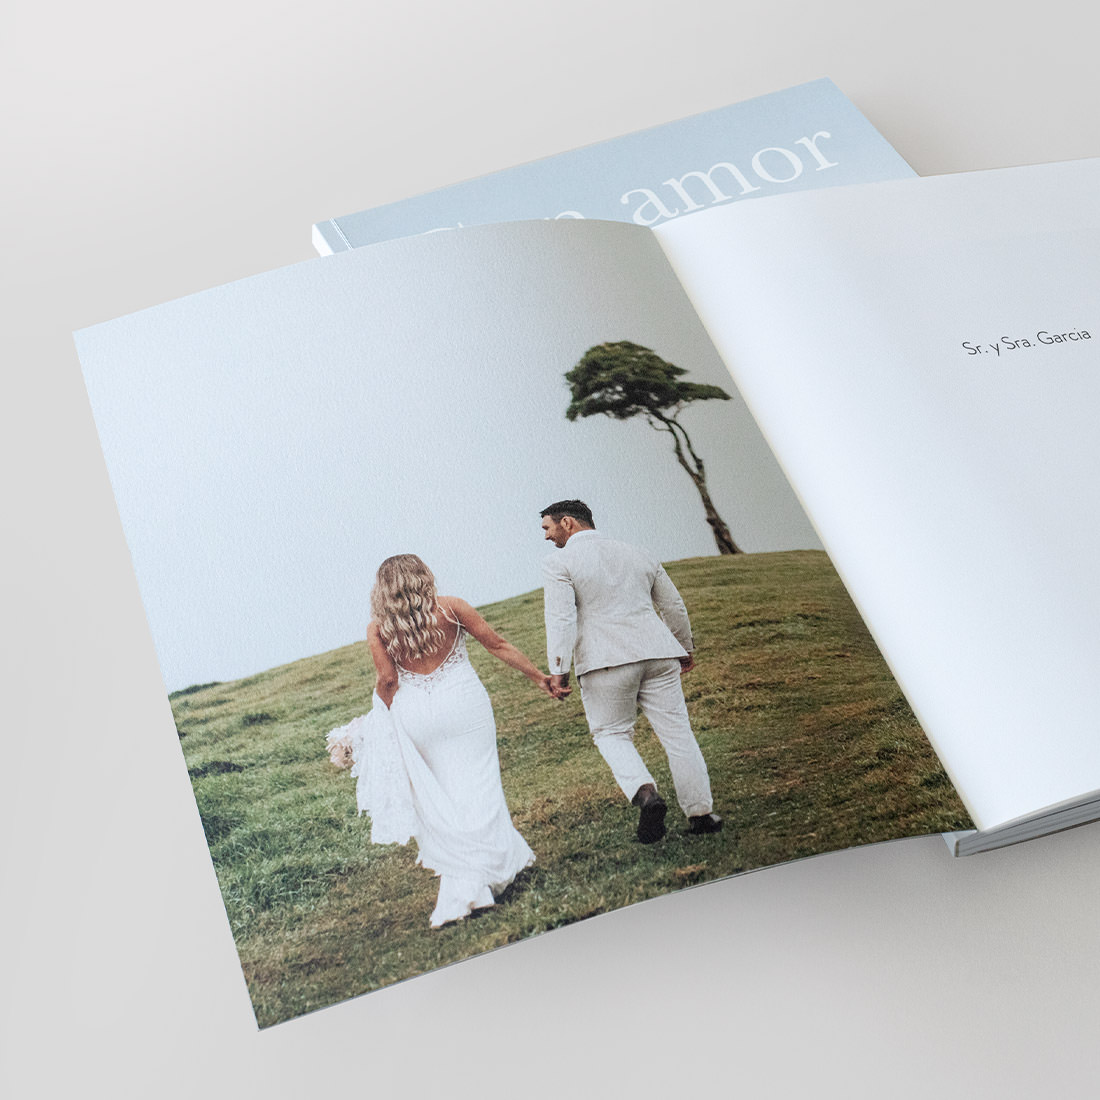 Revista de bodas abierta mostrando la cubierta interior impresa.